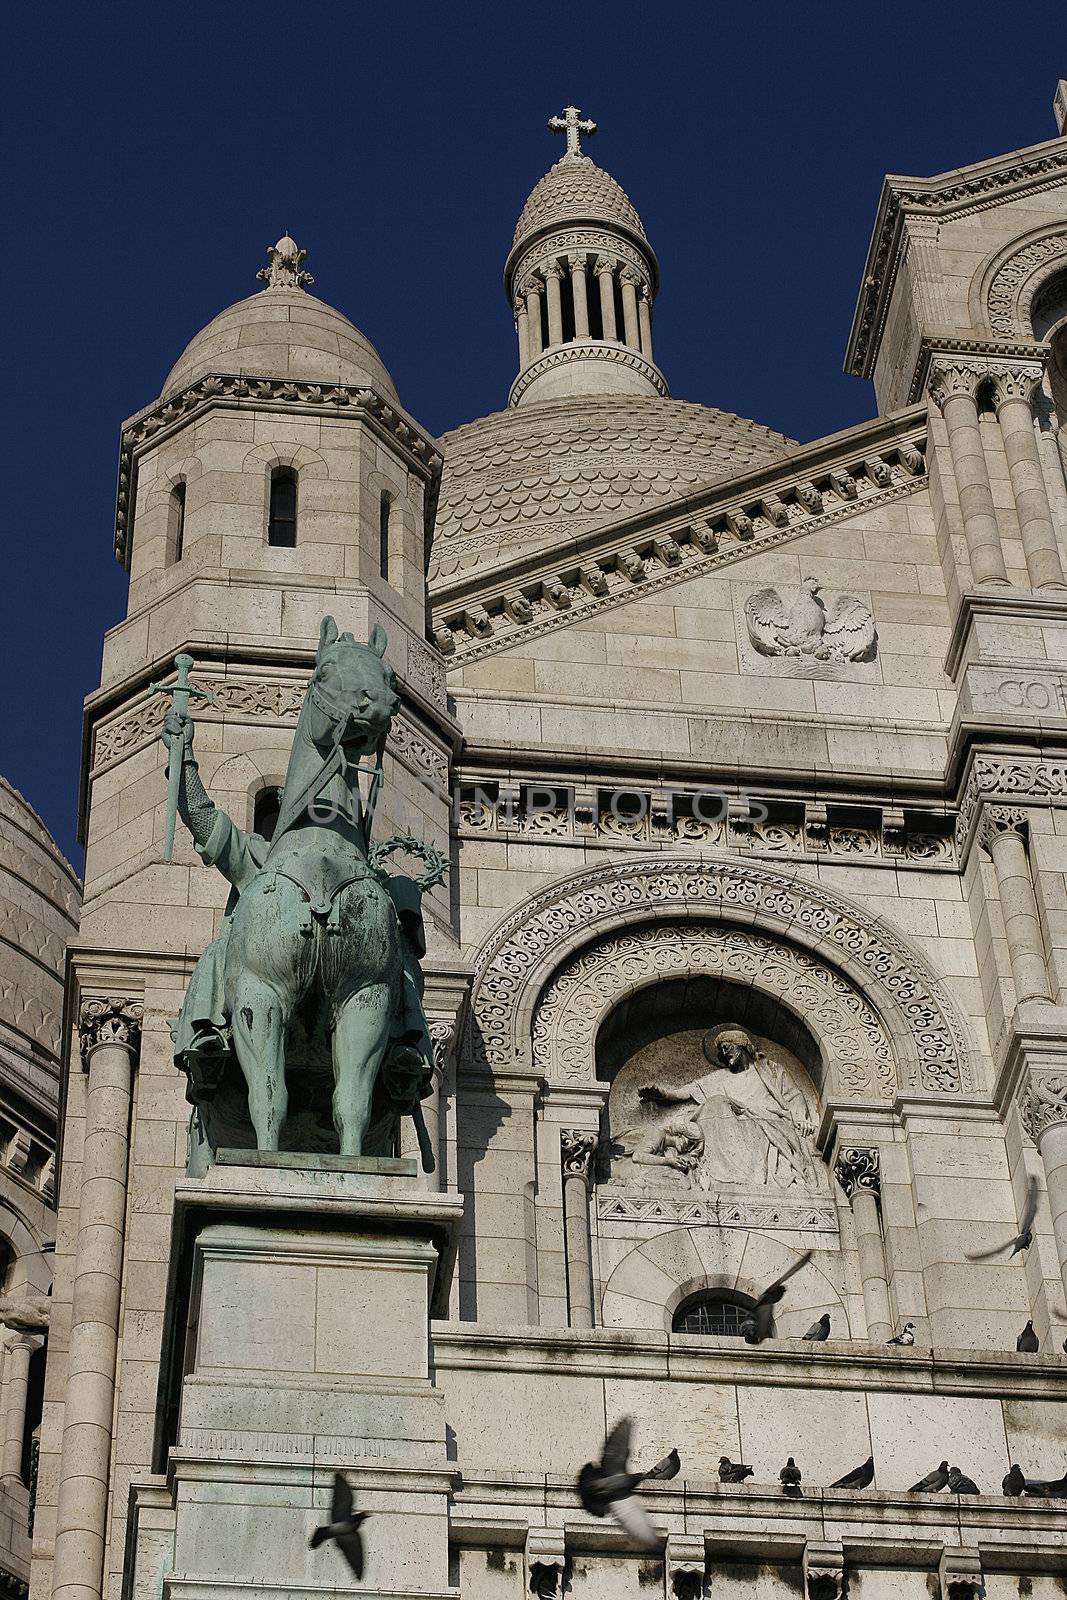 The Sacre-Coeur church in Paris, France